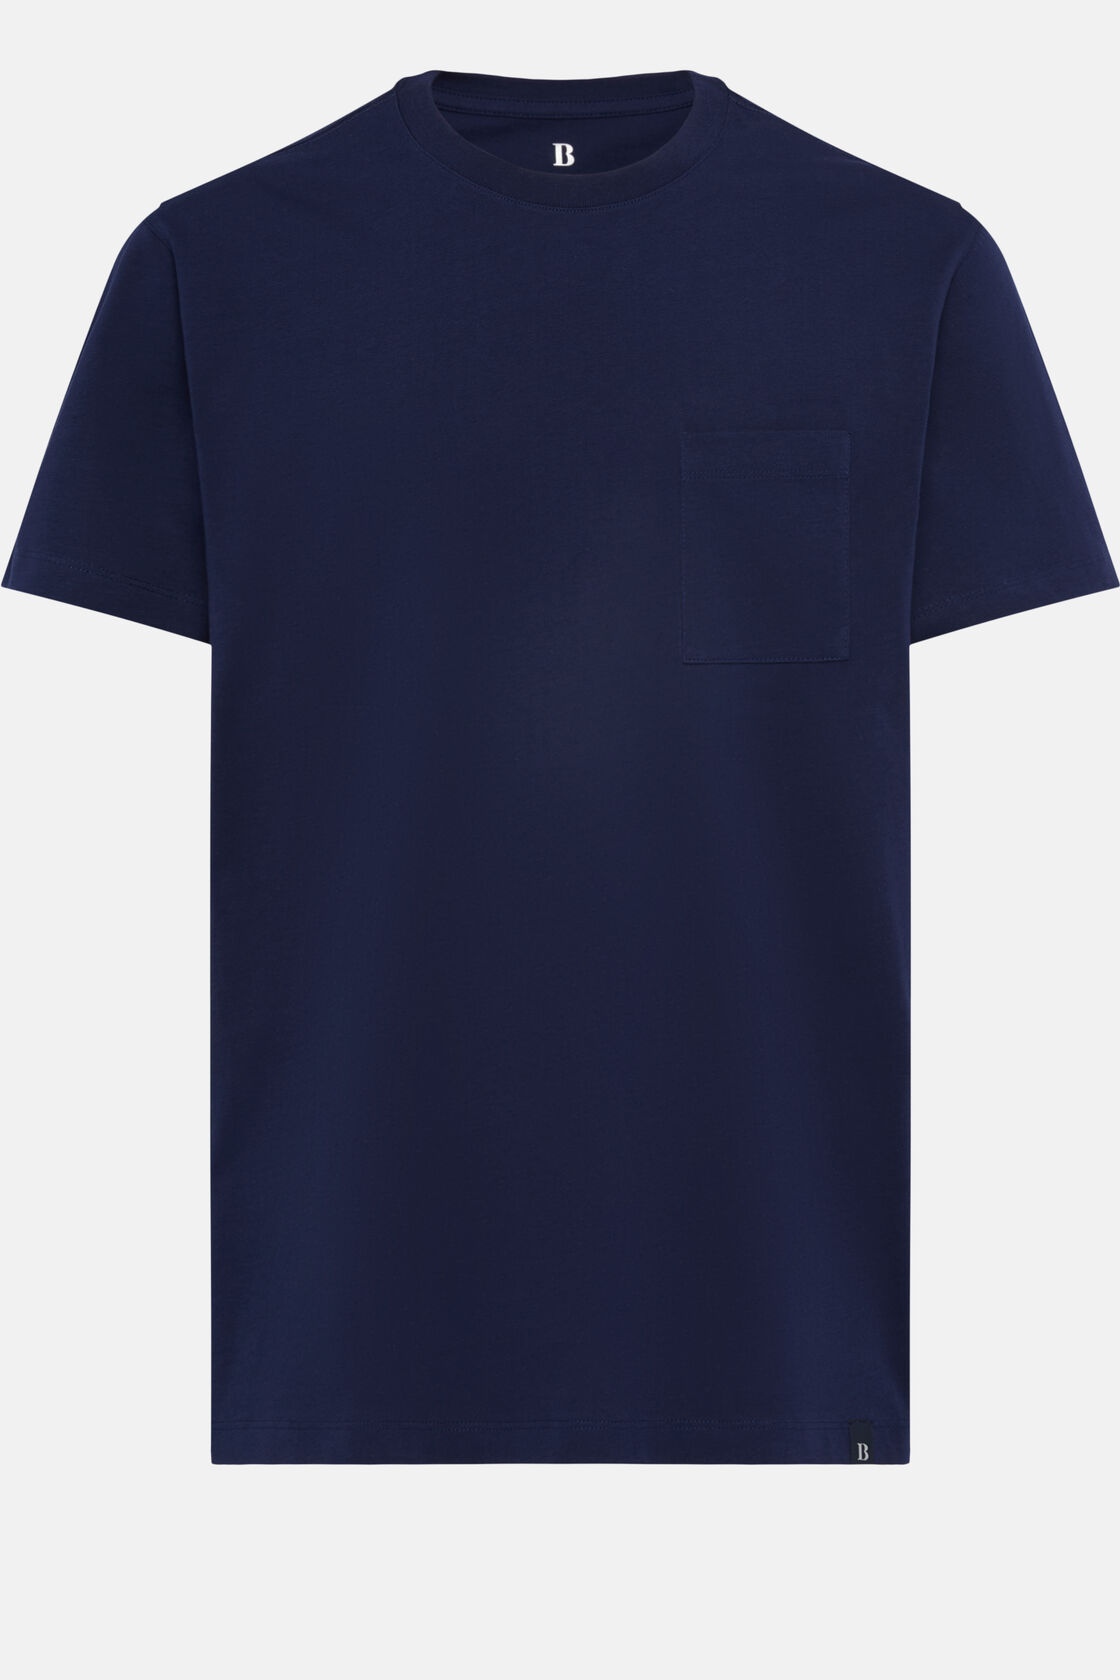 Camisetas de Algodón, Azul  Marino, hi-res